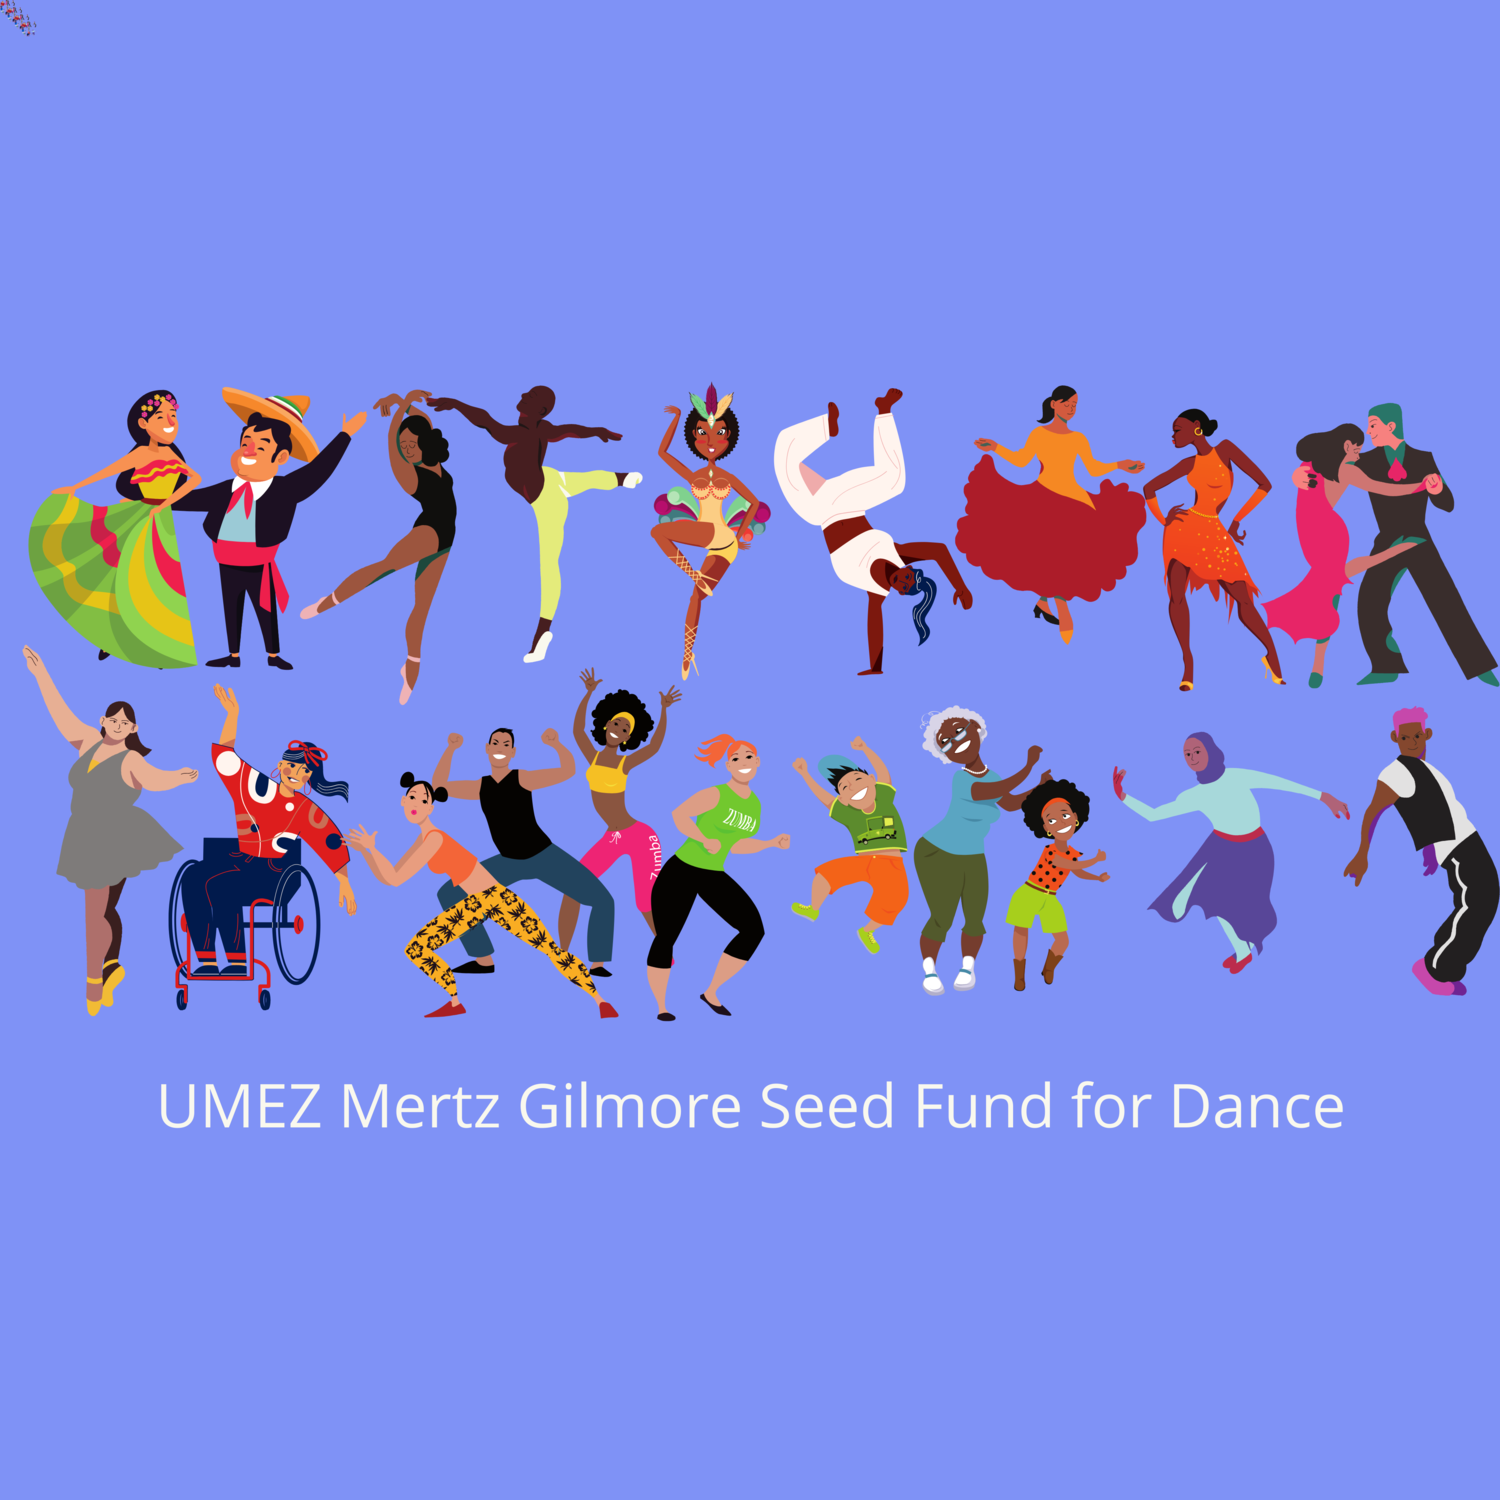 UMEZ Mertz Gilmore Seed Fund for Dance